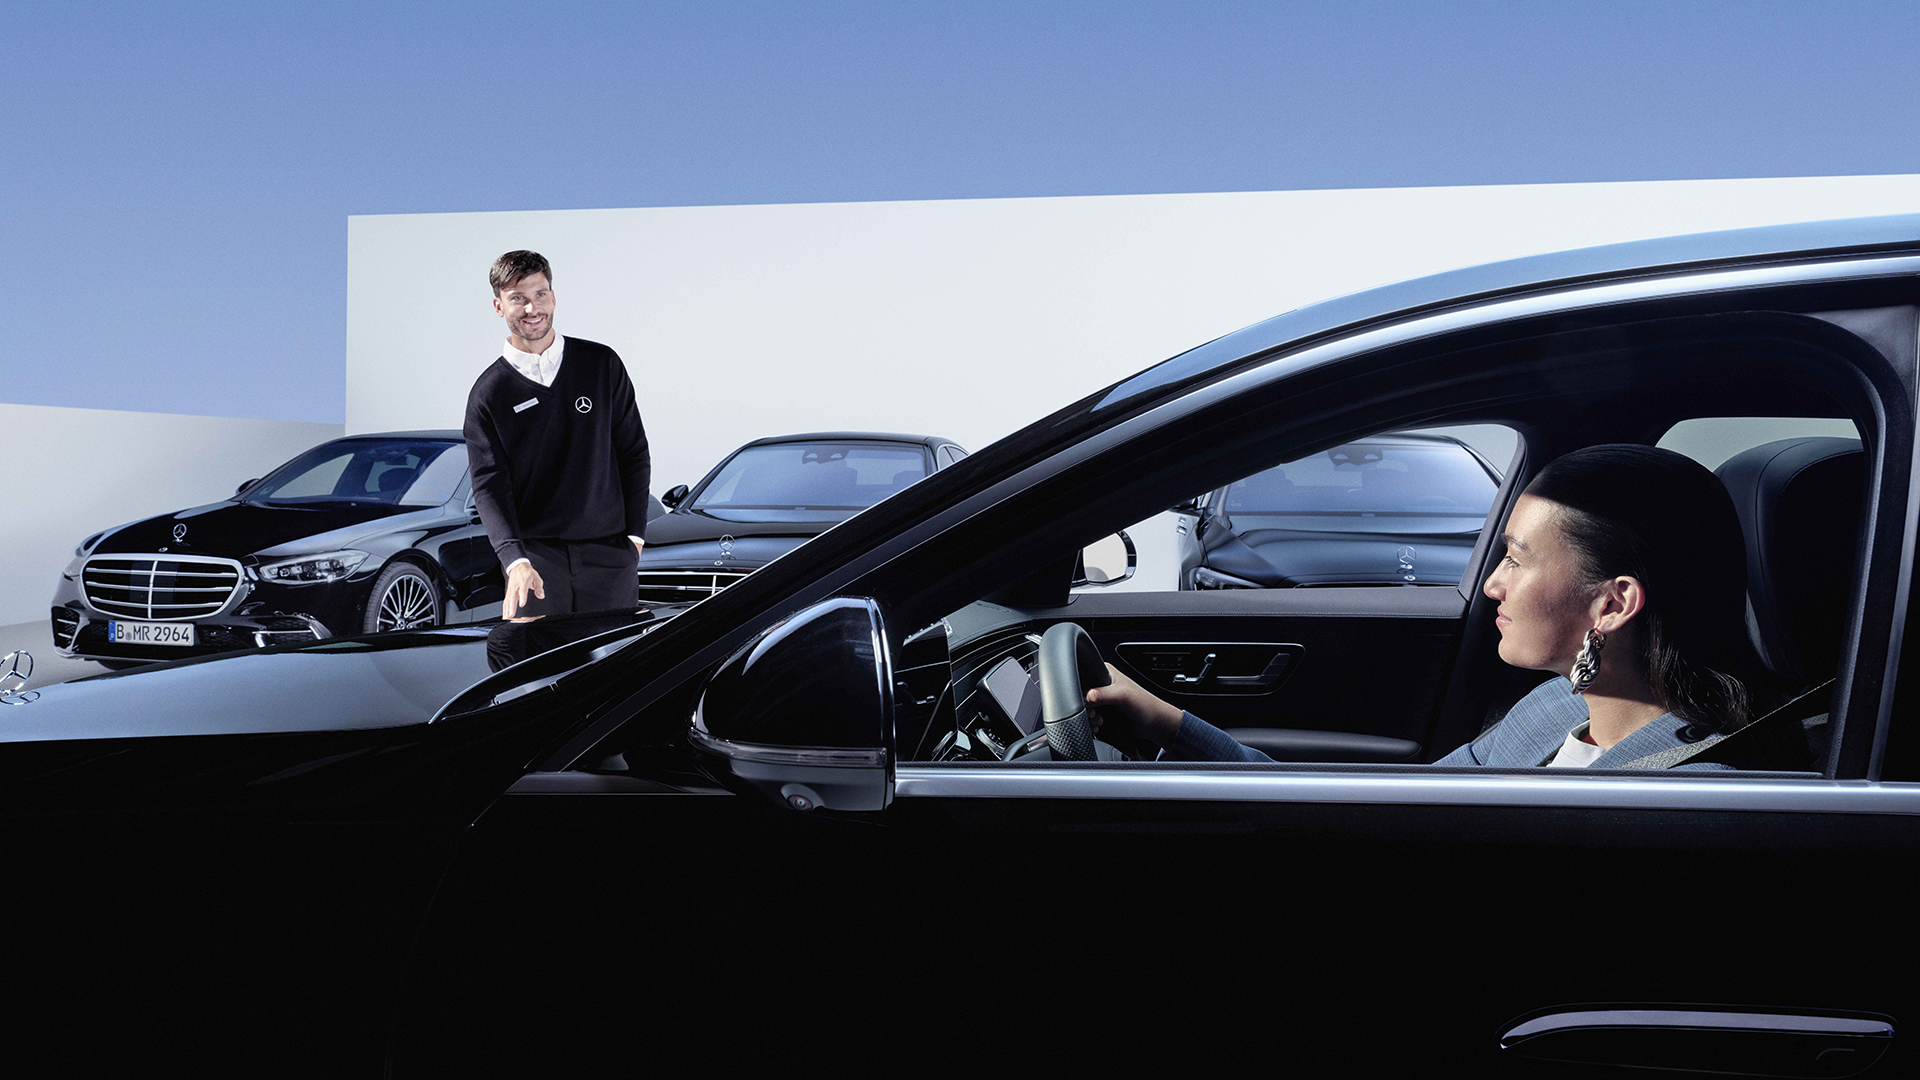 Henkilö istuu mustassa Mercedeksessä. Taustalla seisoo asiakaspalvelija takanaan useita Mercedeksiä.